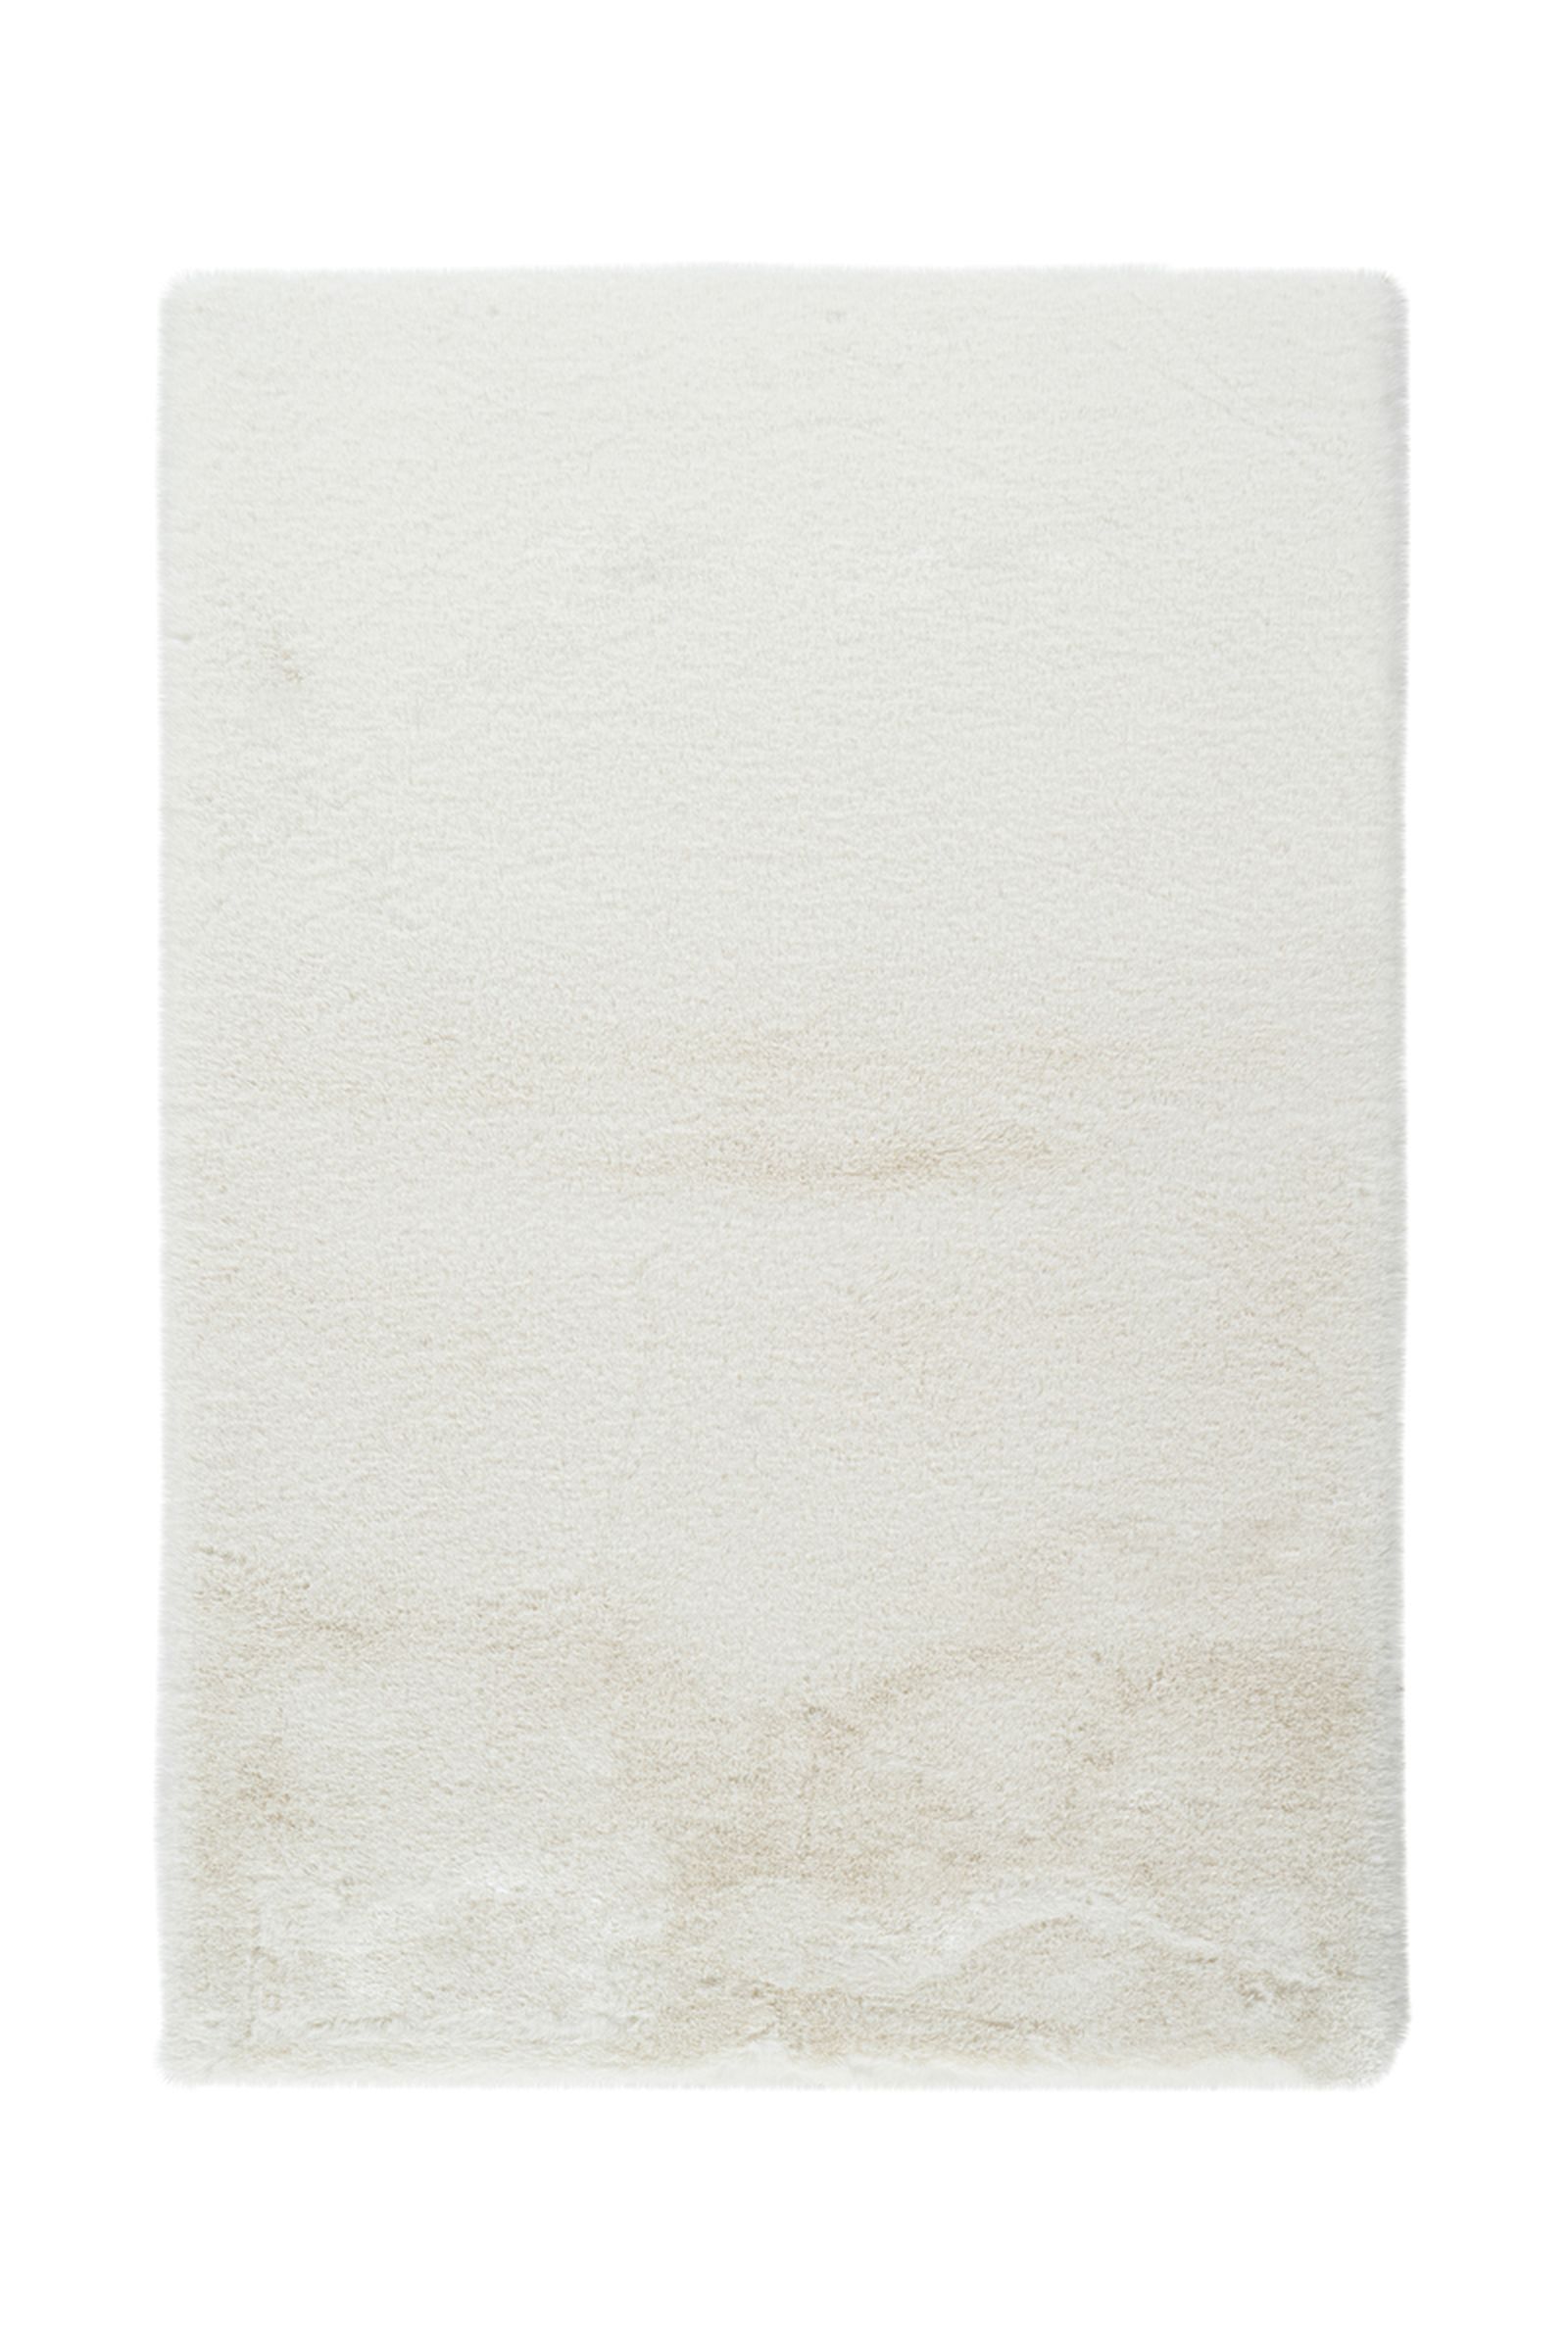 Badematte Rabbit Light 625 Weiß 40 cm x 60 cm